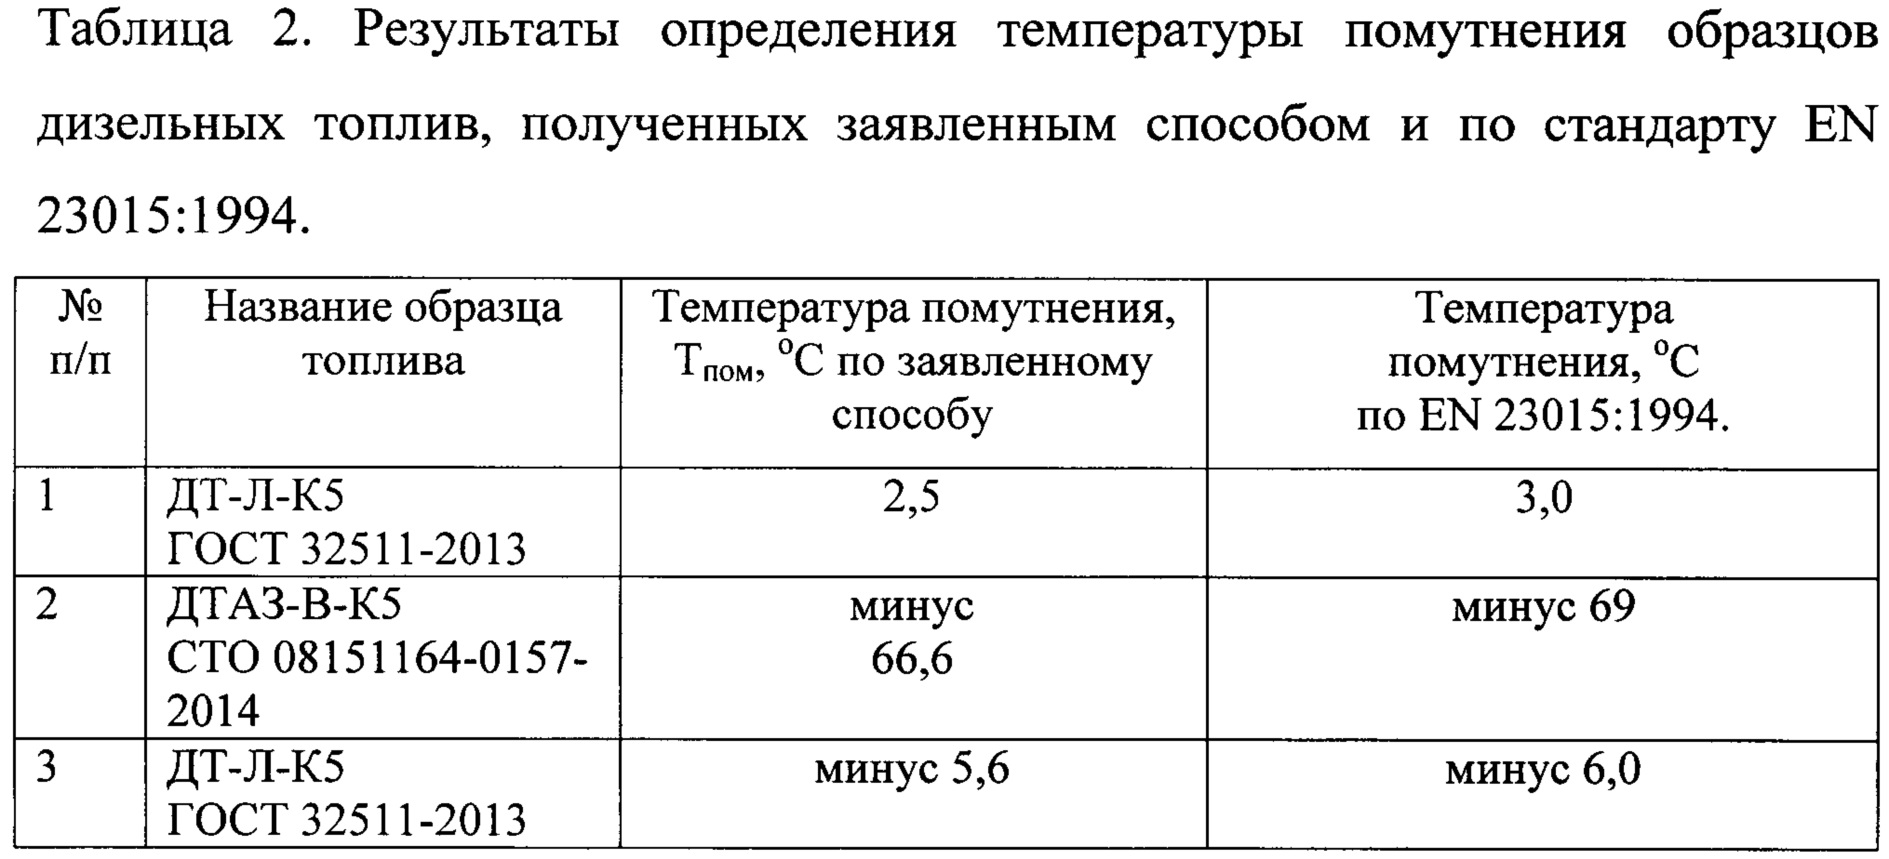 Летний дизель температура замерзания: Стандартная морозоустойчивость — Журнал «Сибирская нефть» — №104 (сентябрь 2013) — Газпром нефть